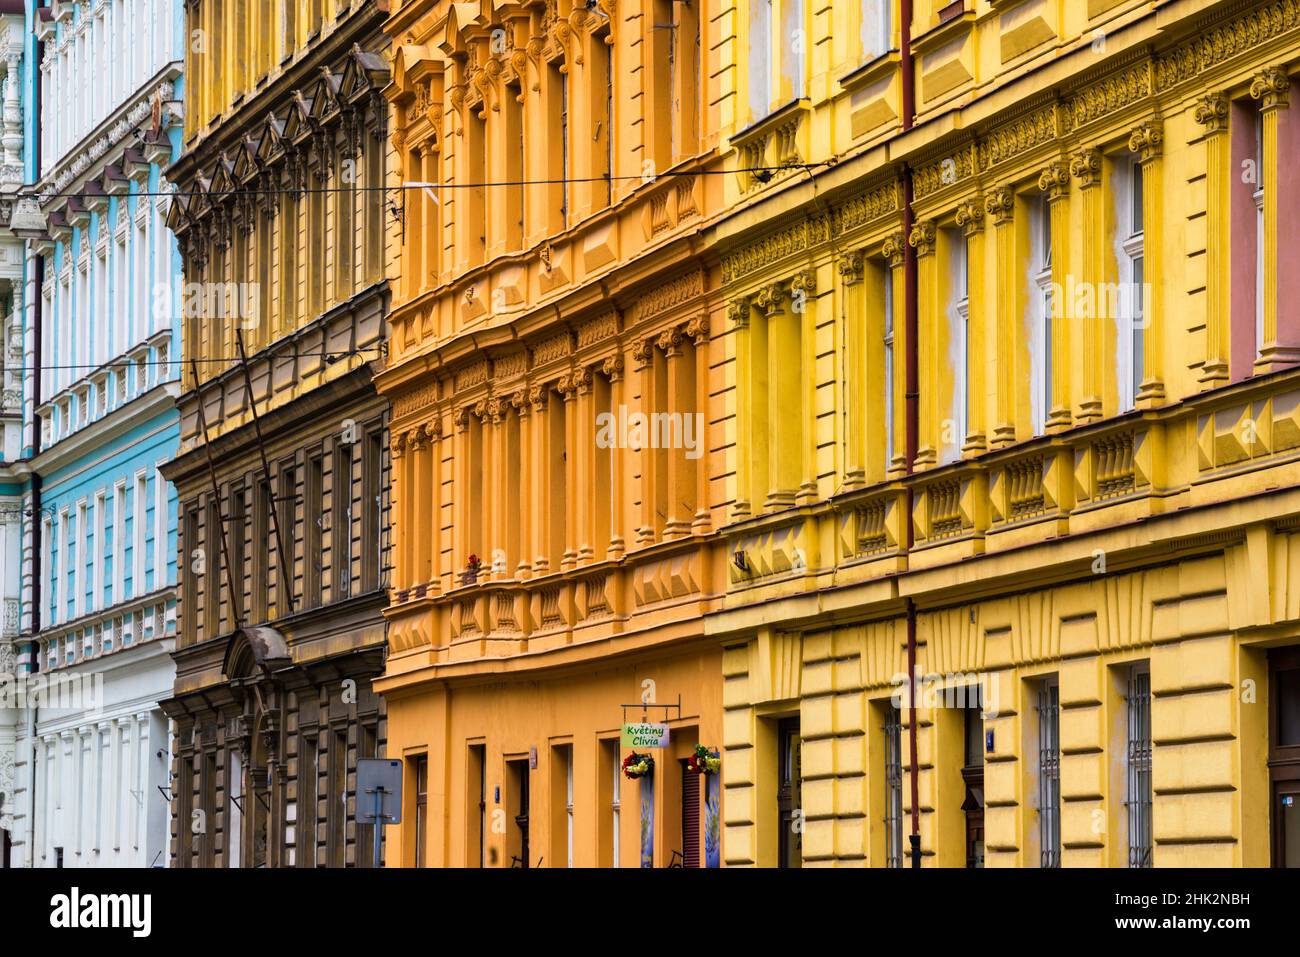 Europa, República Checa, Praga. Fachada de coloridos edificios. Foto de stock